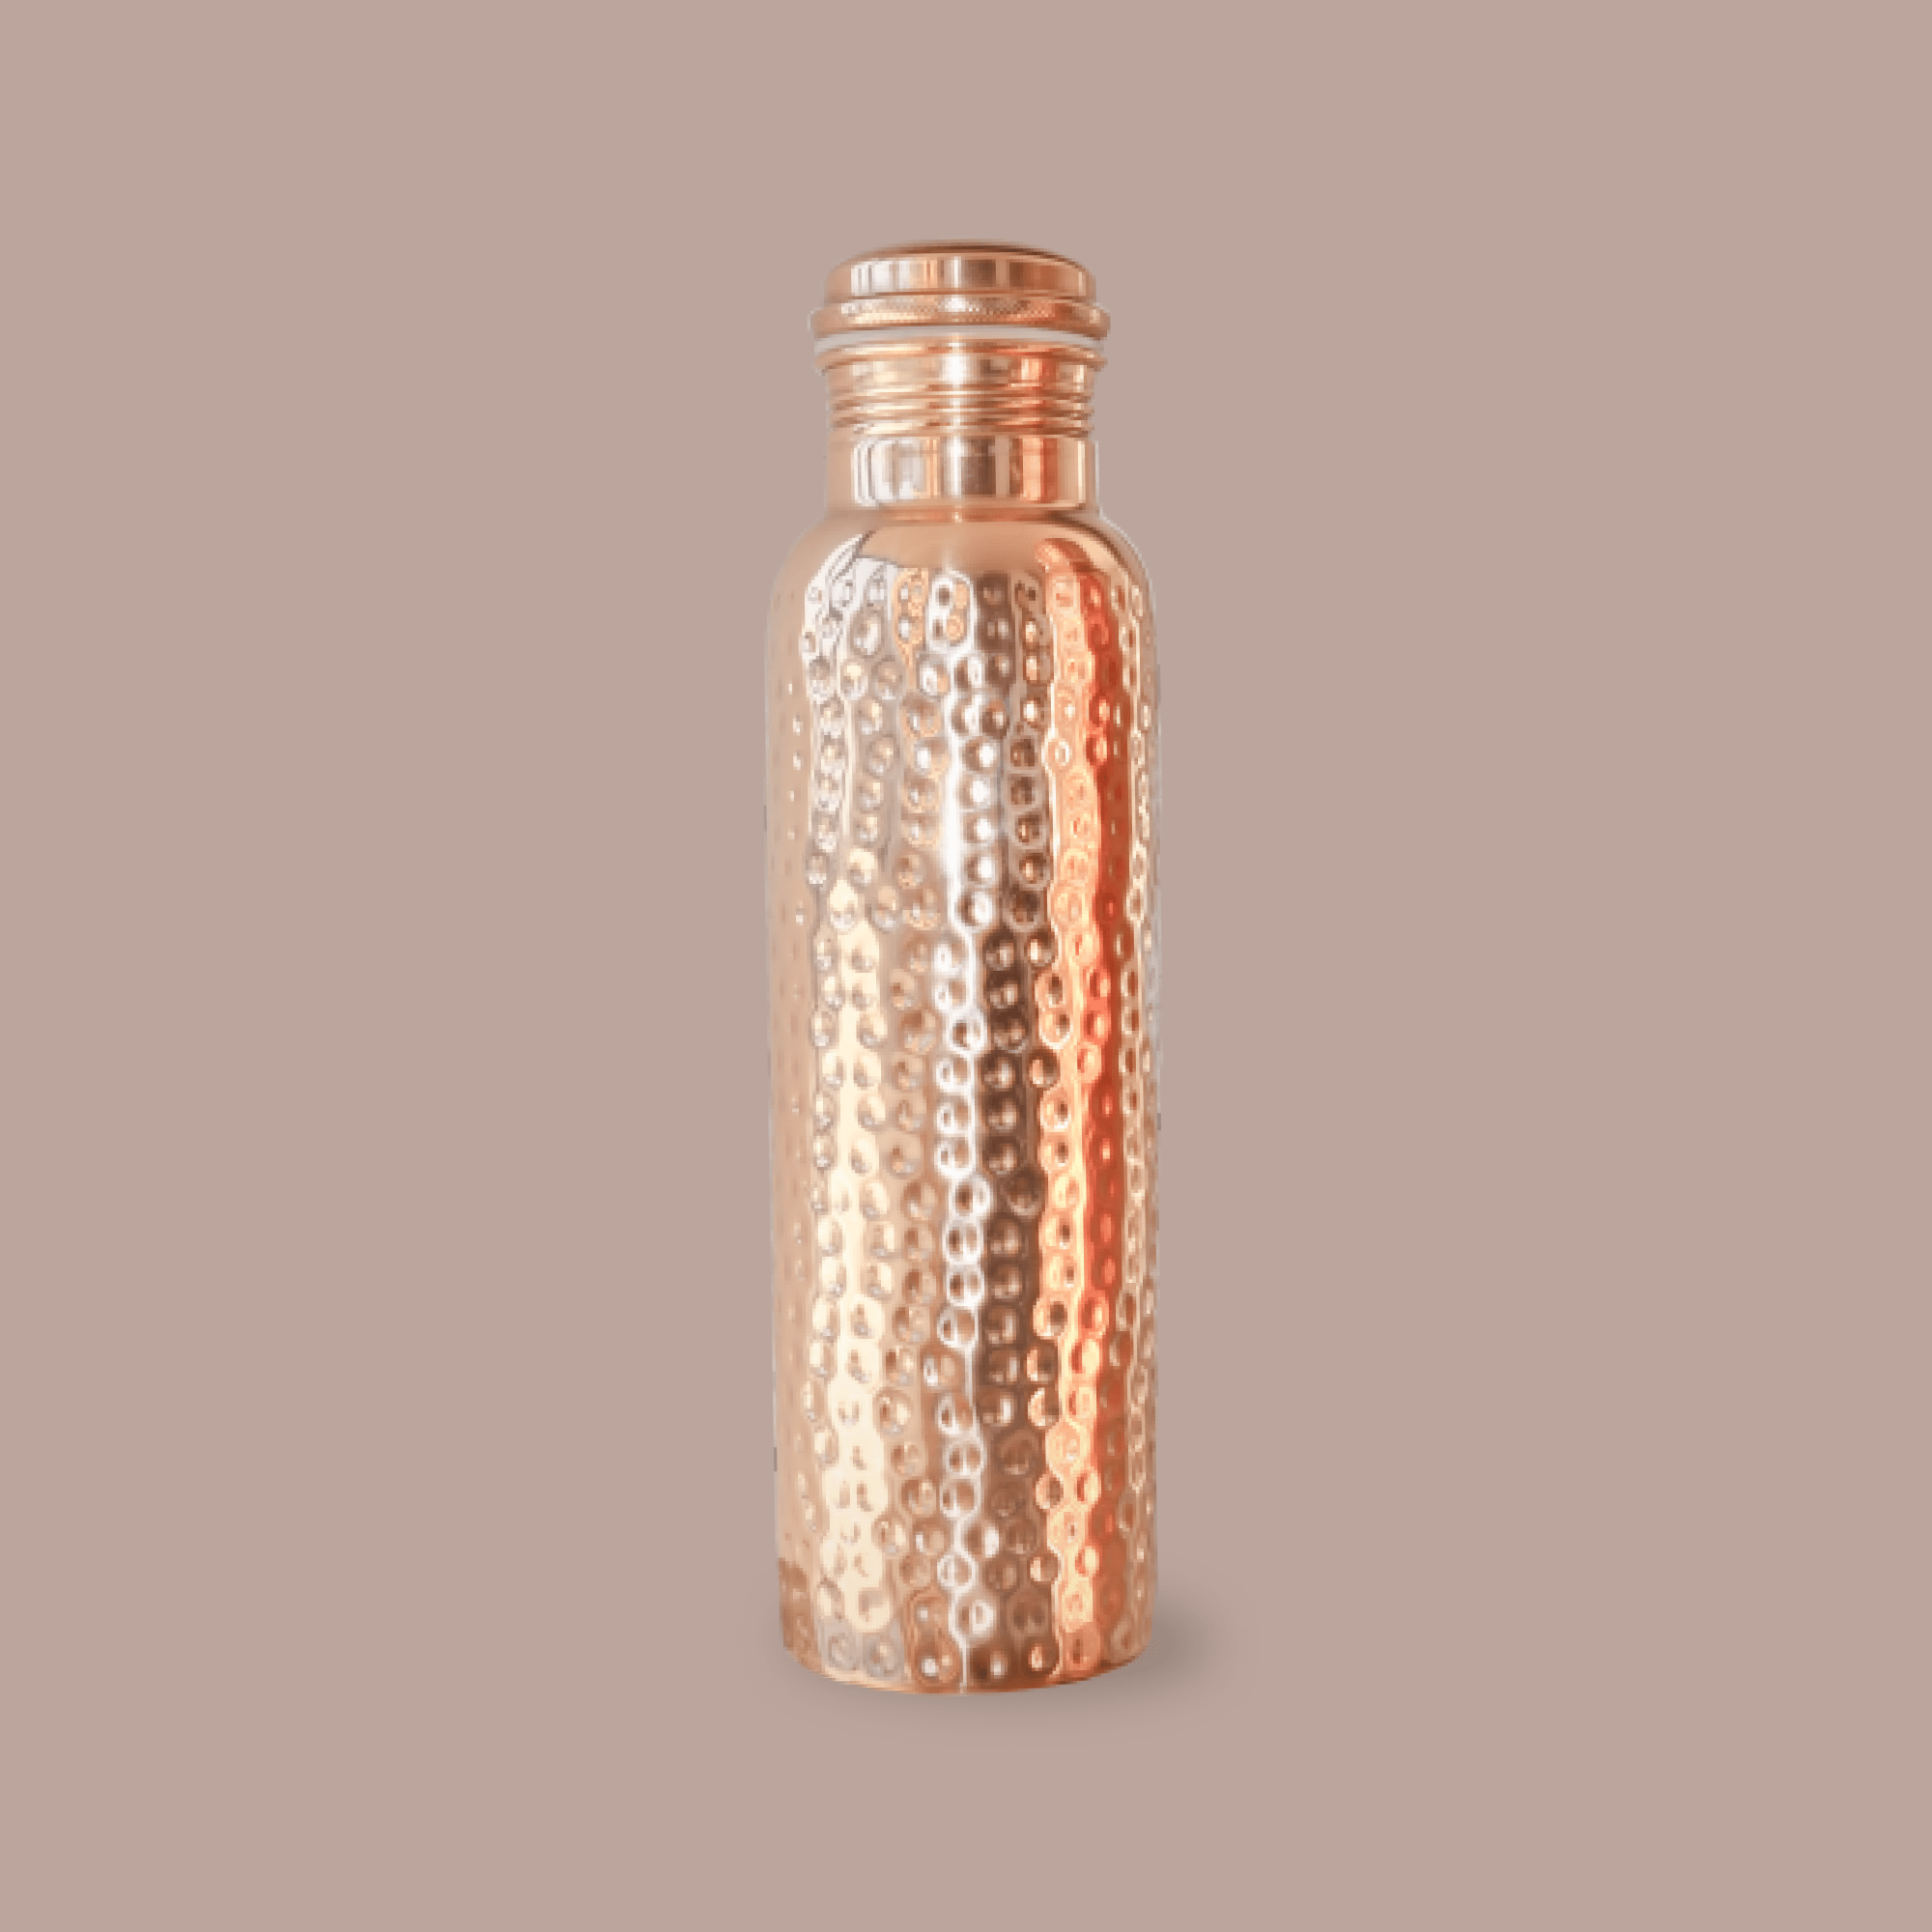 Prakti Beauty Copper Wellness Water Bottle